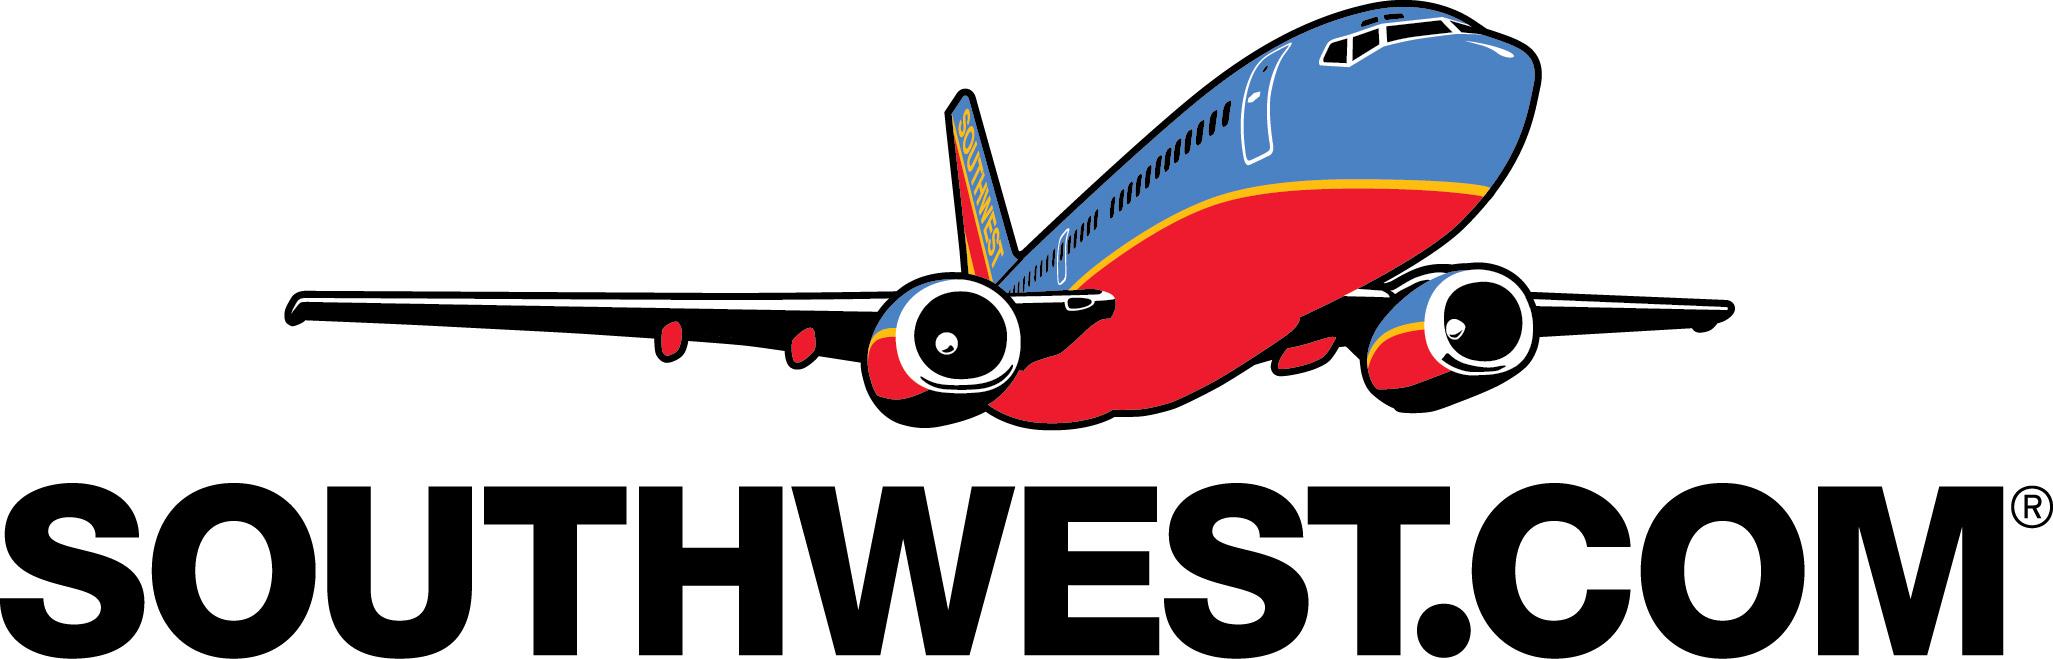 Southwest Company Logo - southwest.com Takeoff Logo - iPain Foundation